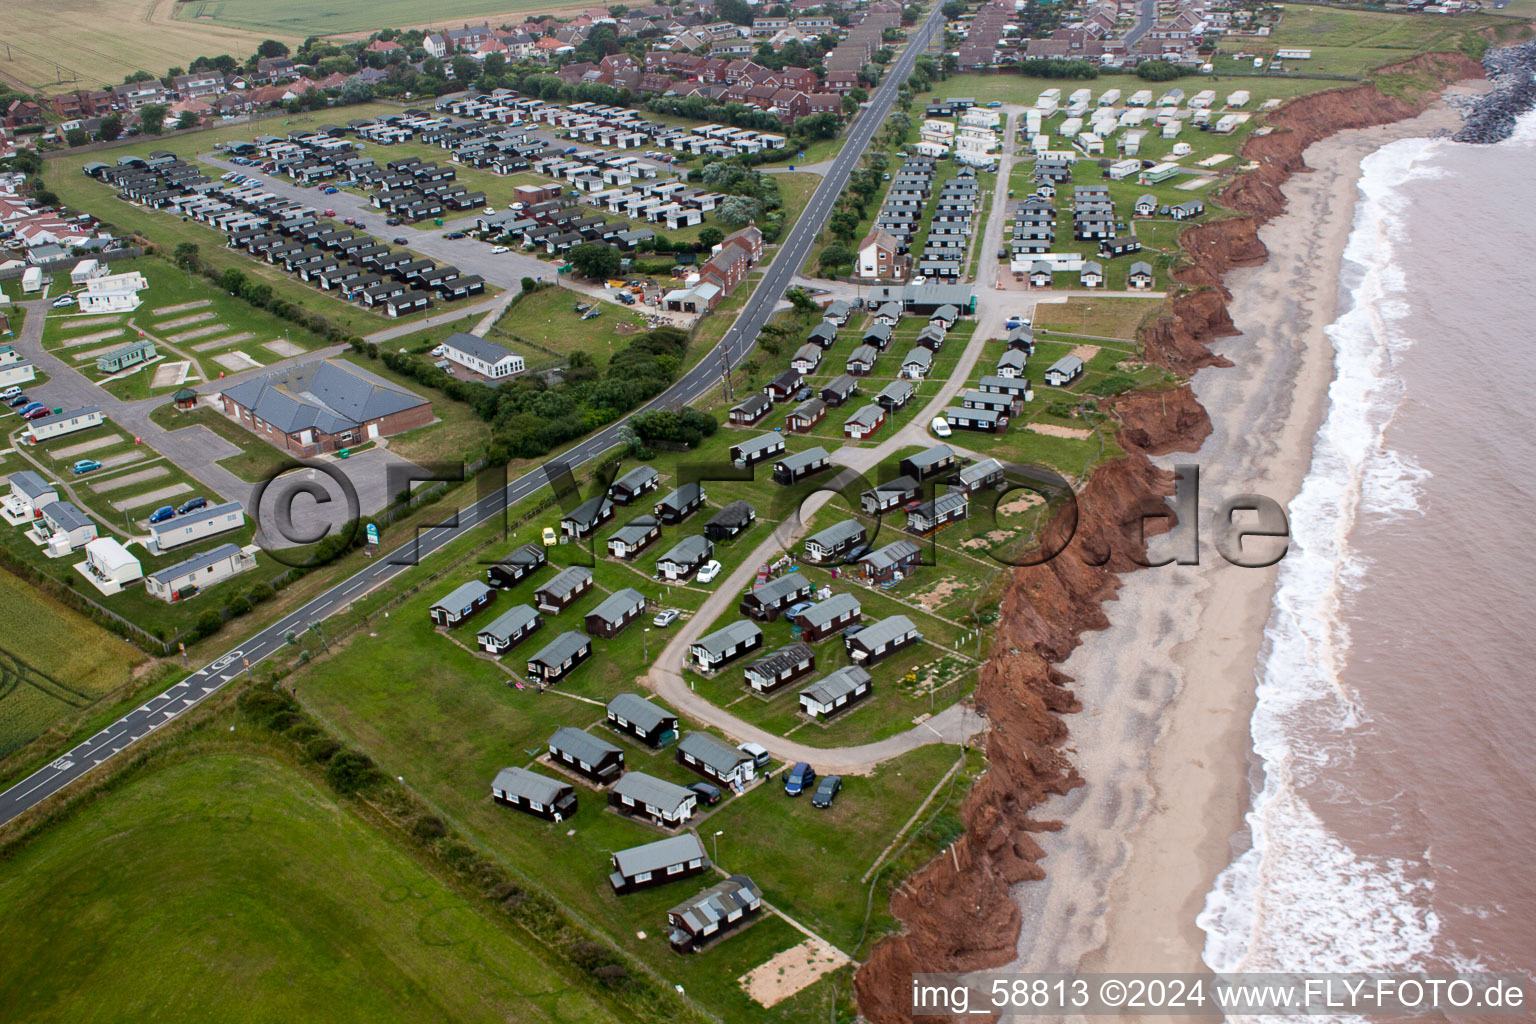 Ferienhaus- Anlage des Ferienparks Golden Sands Ferien Park an der Küste in Withernsea in England, Vereinigtes Königreich, Großbritanien